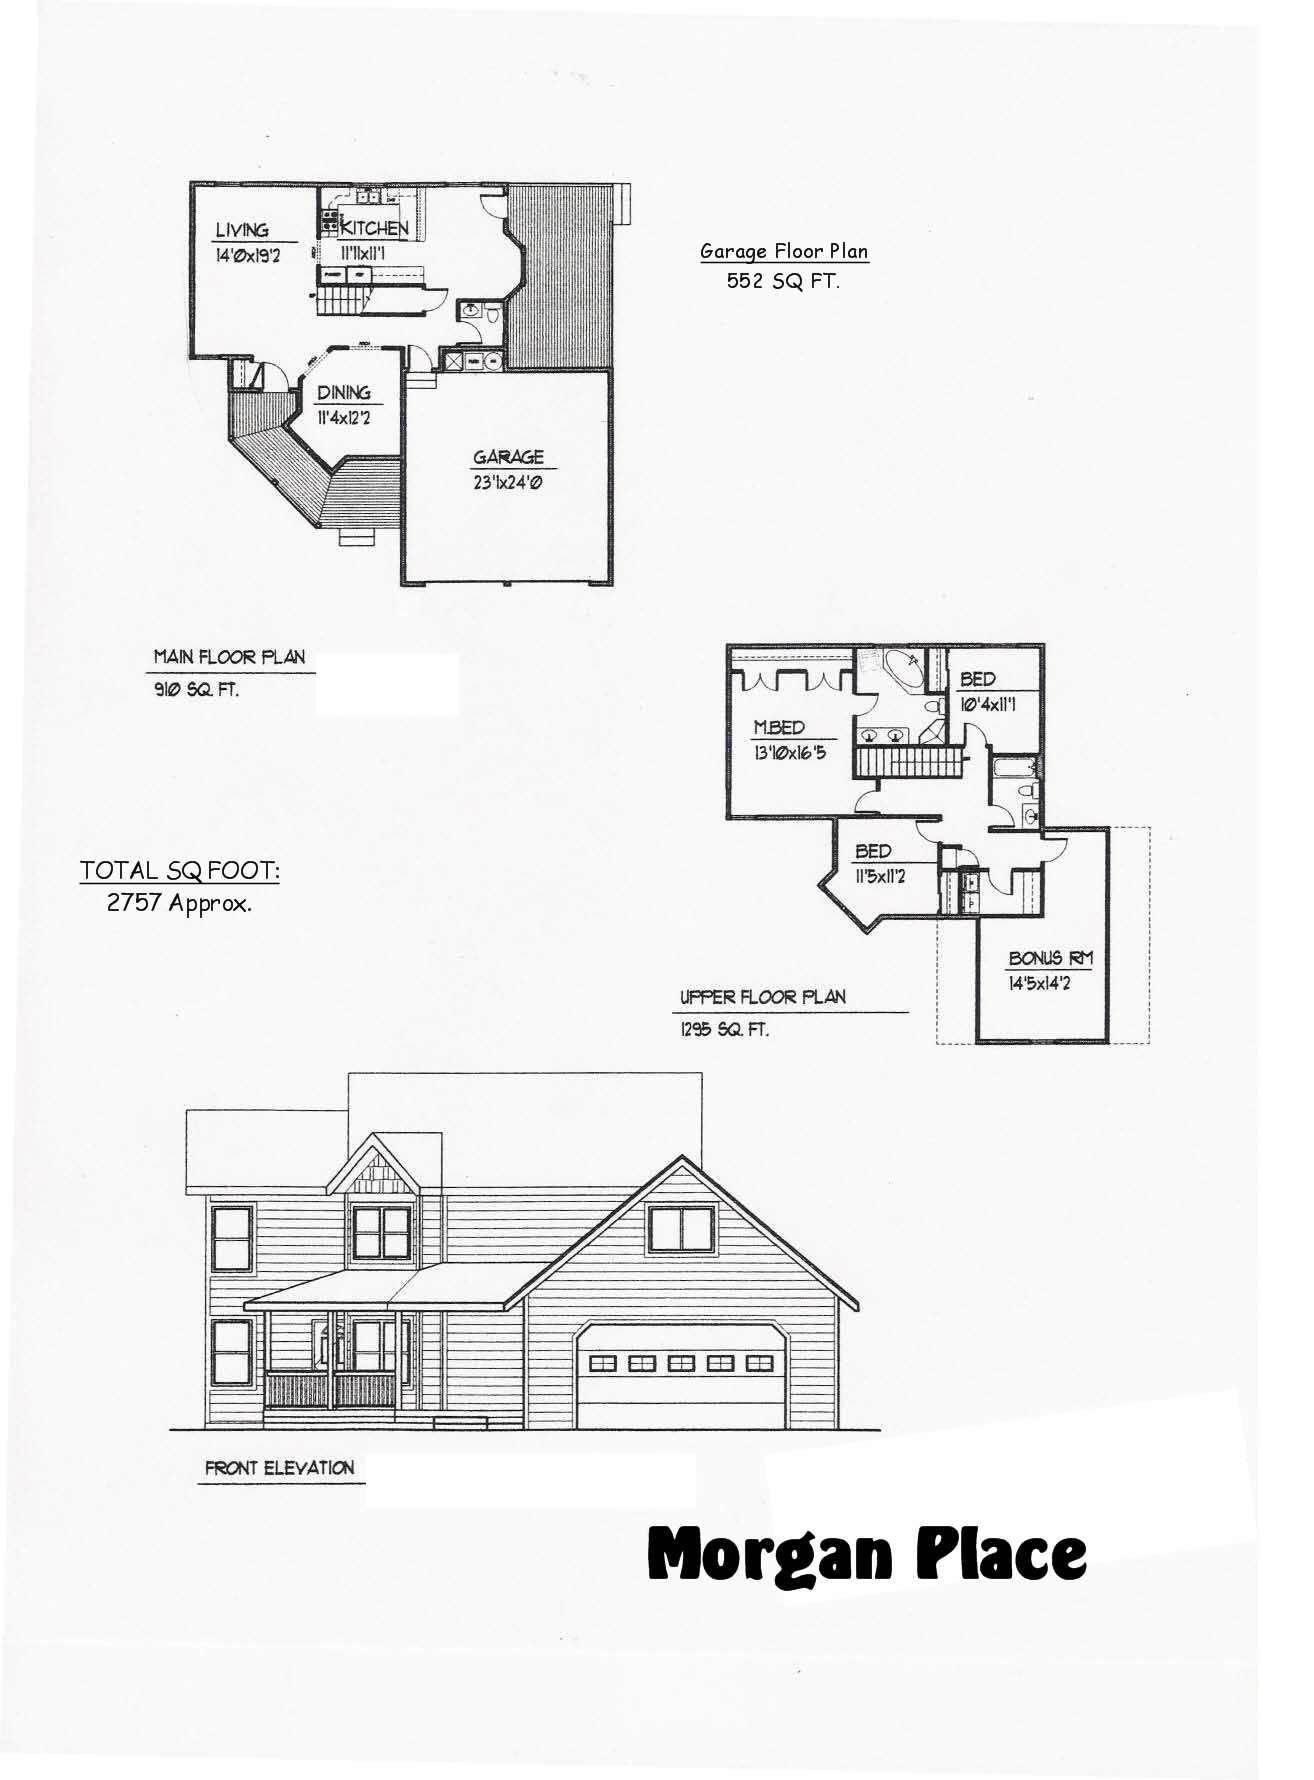 Morgan Place Floor Plan